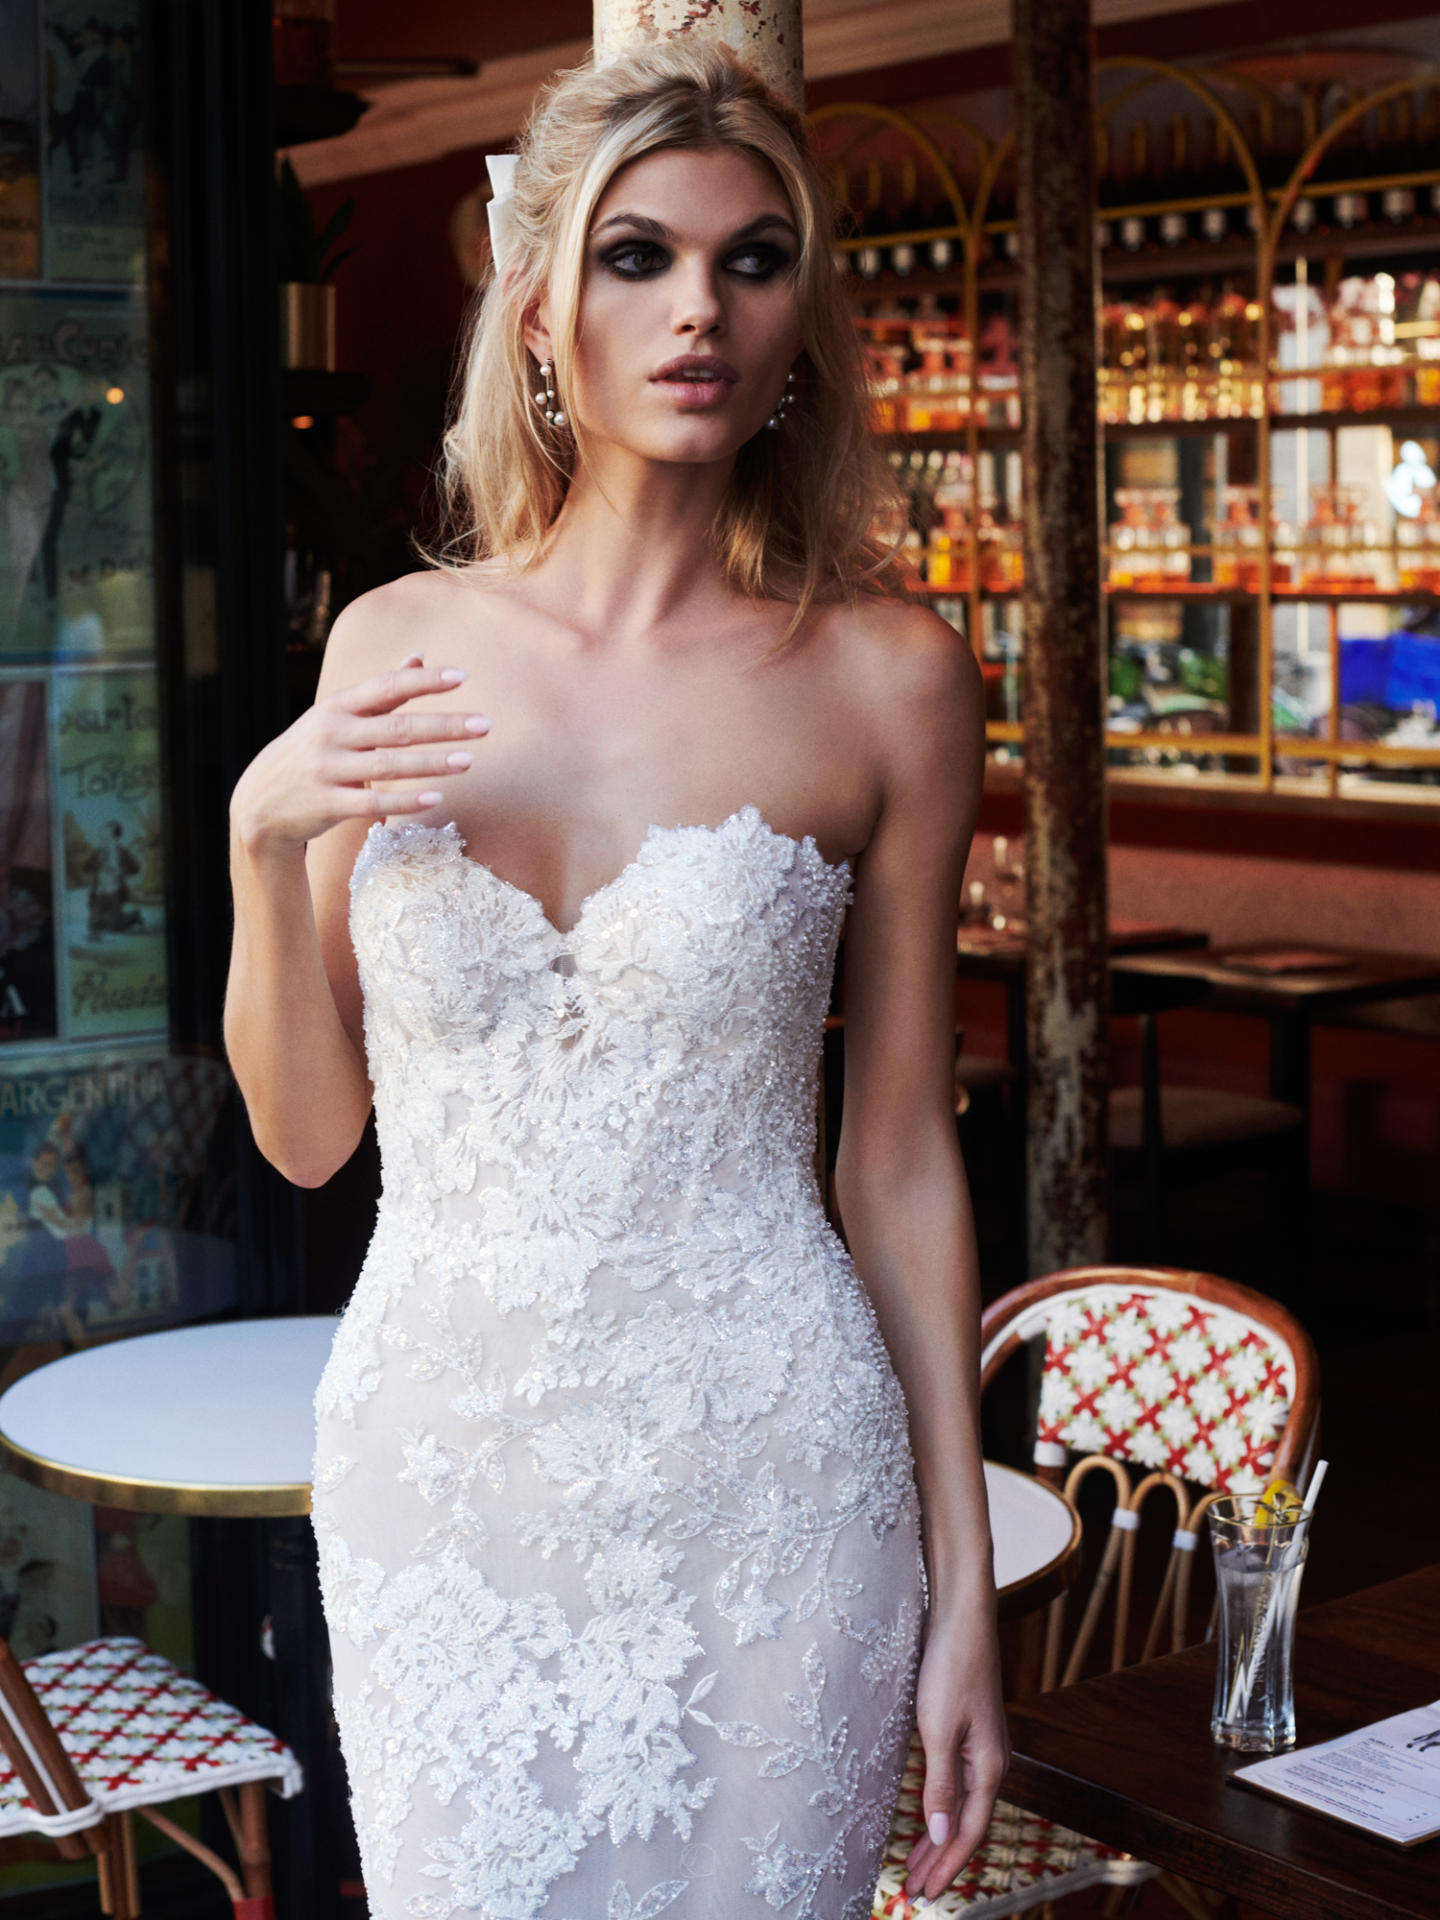 What Type of Bra Should I Wear With My Wedding Dress? - Galia Lahav